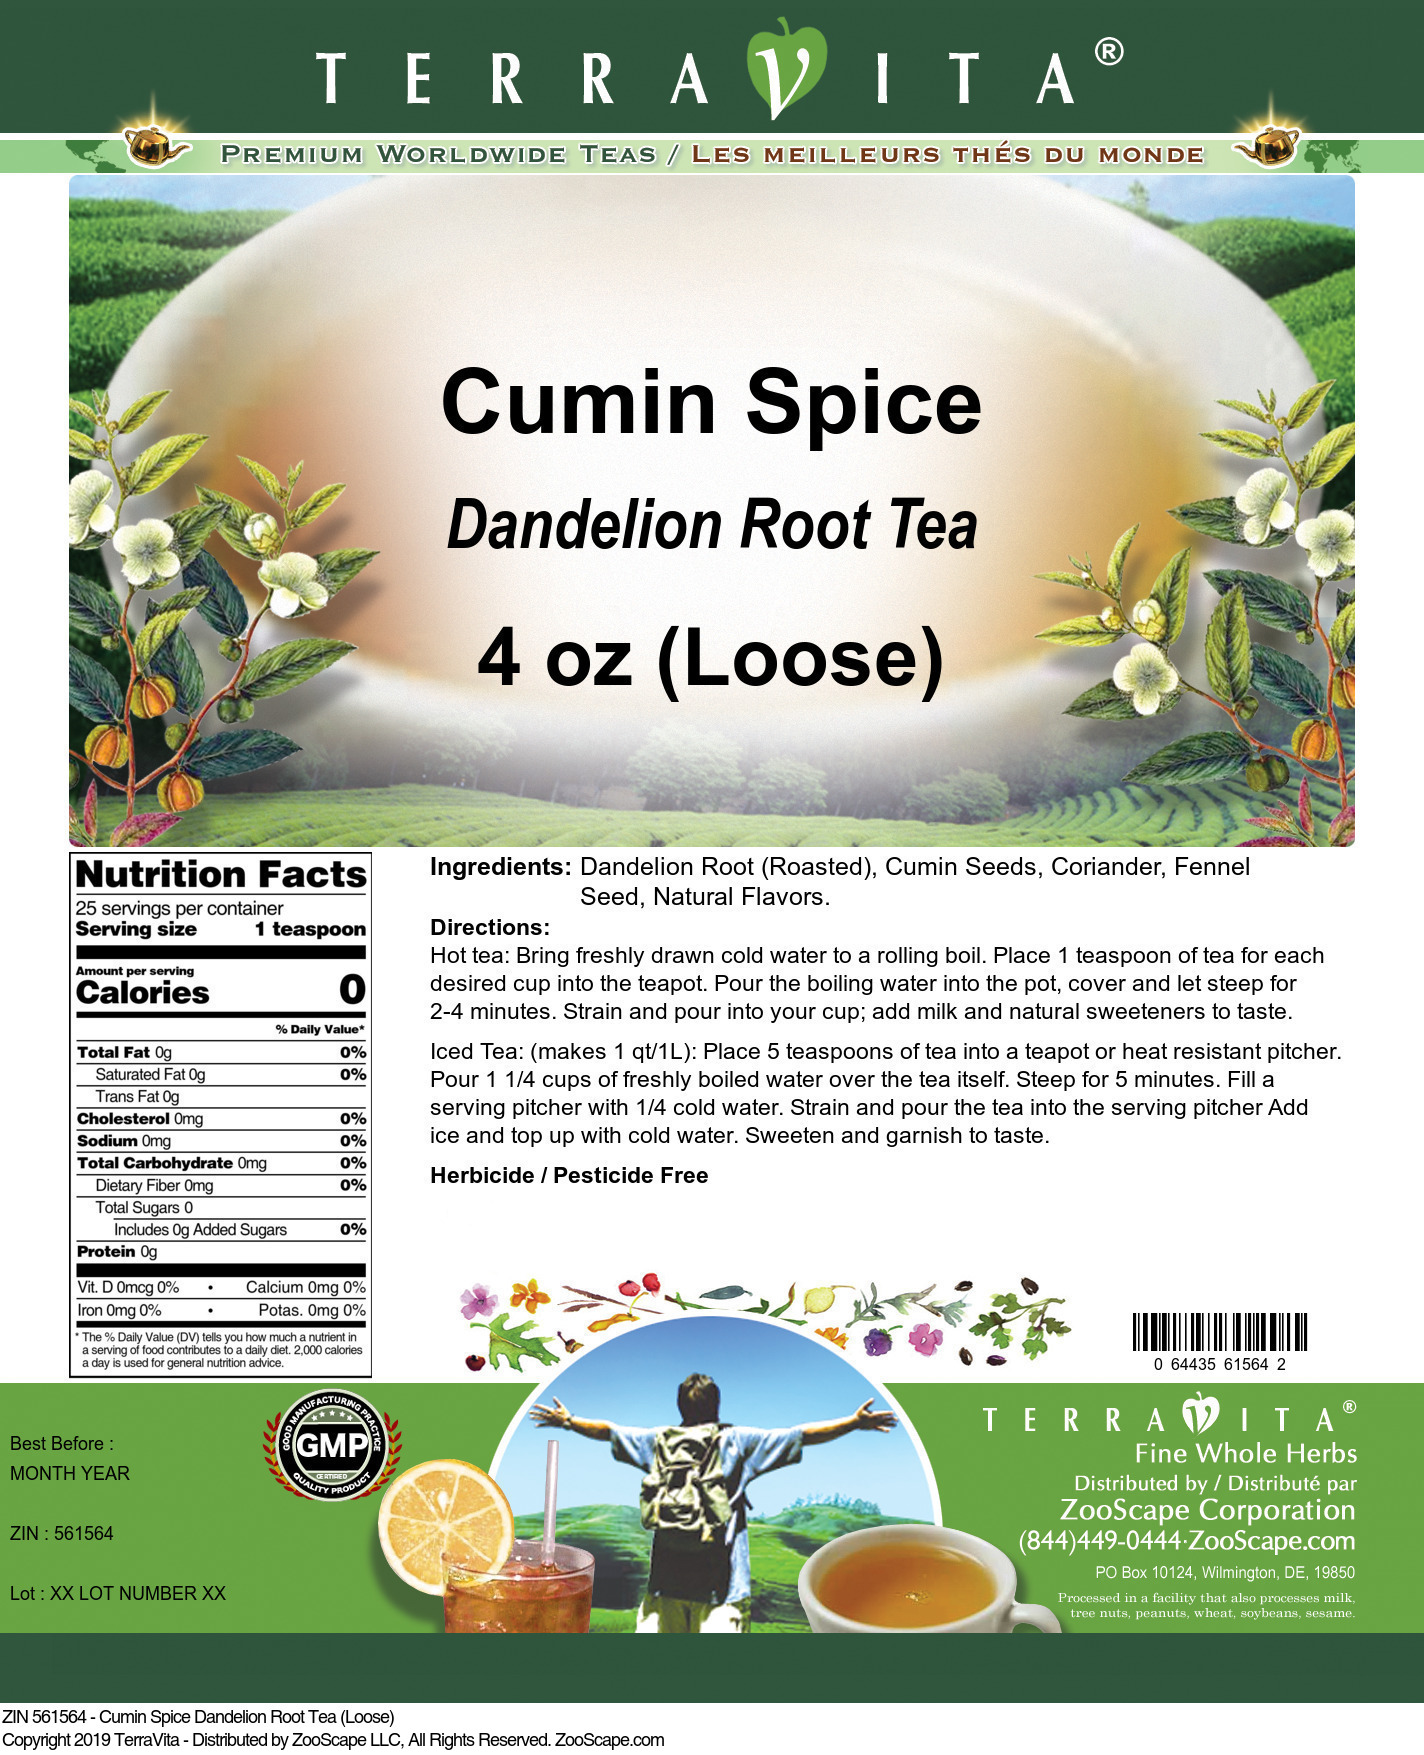 Cumin Spice Dandelion Root Tea (Loose) - Label